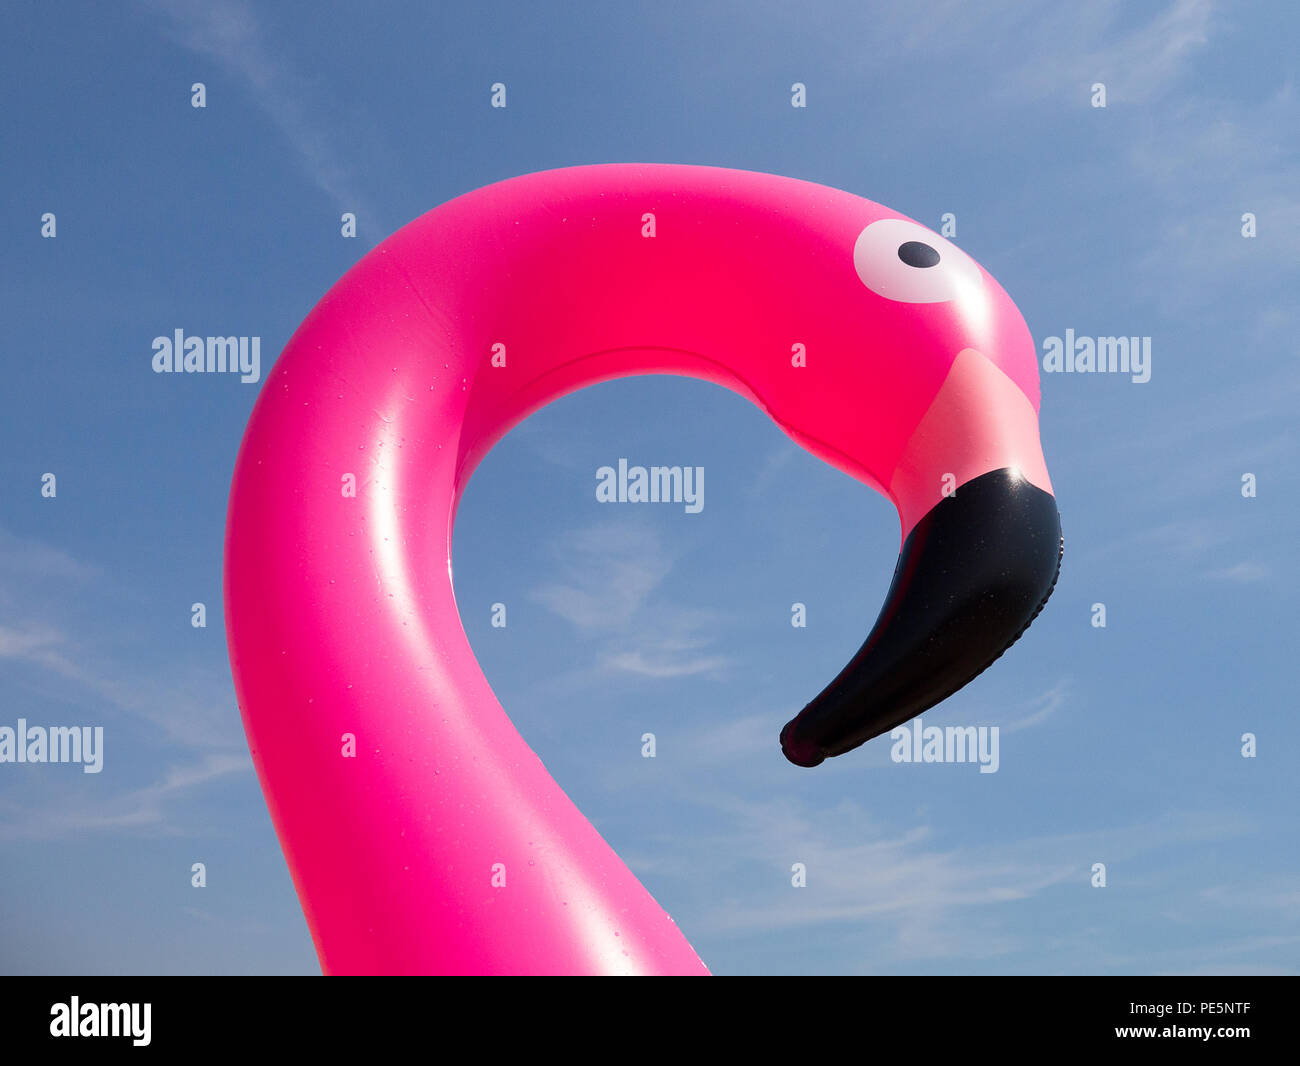 Close up couleur de la tête et du cou d'un gonflable rose flamingo, tourné à partir de ci-dessous contre un ciel bleu avec des nuages filandreux faible Banque D'Images